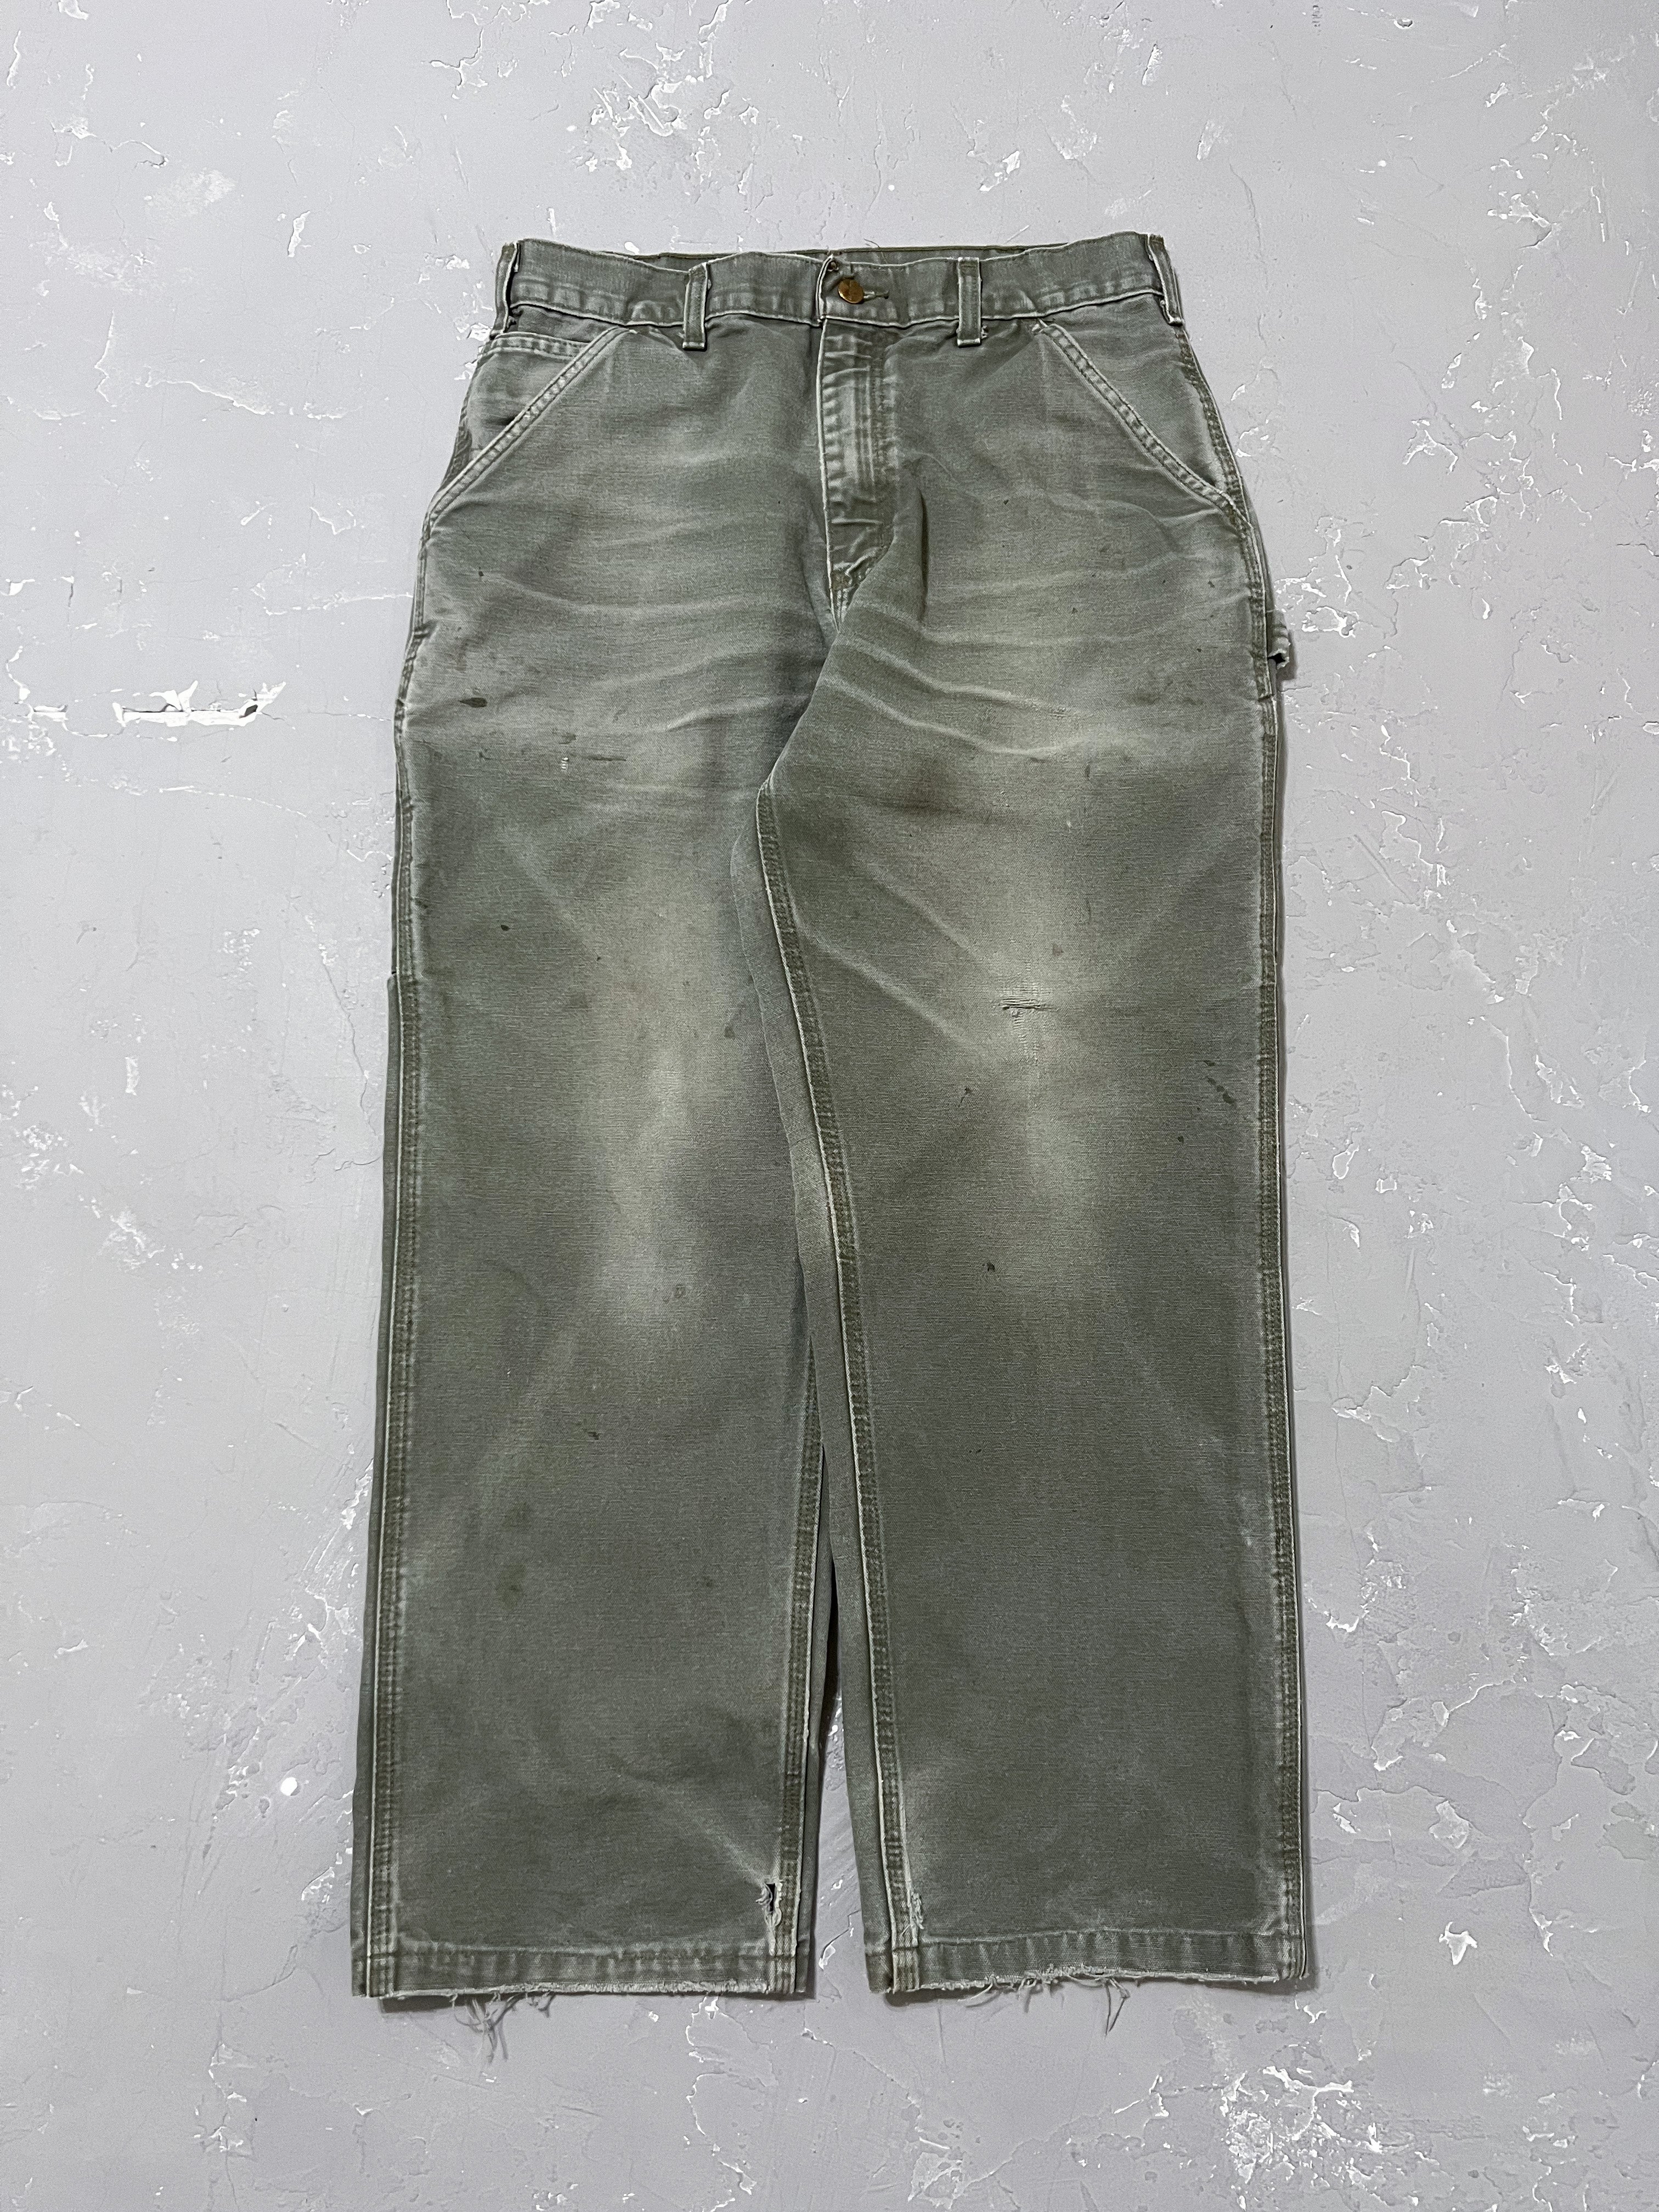 Carhartt Faded Moss Green Carpenter Pants [32 x 32]